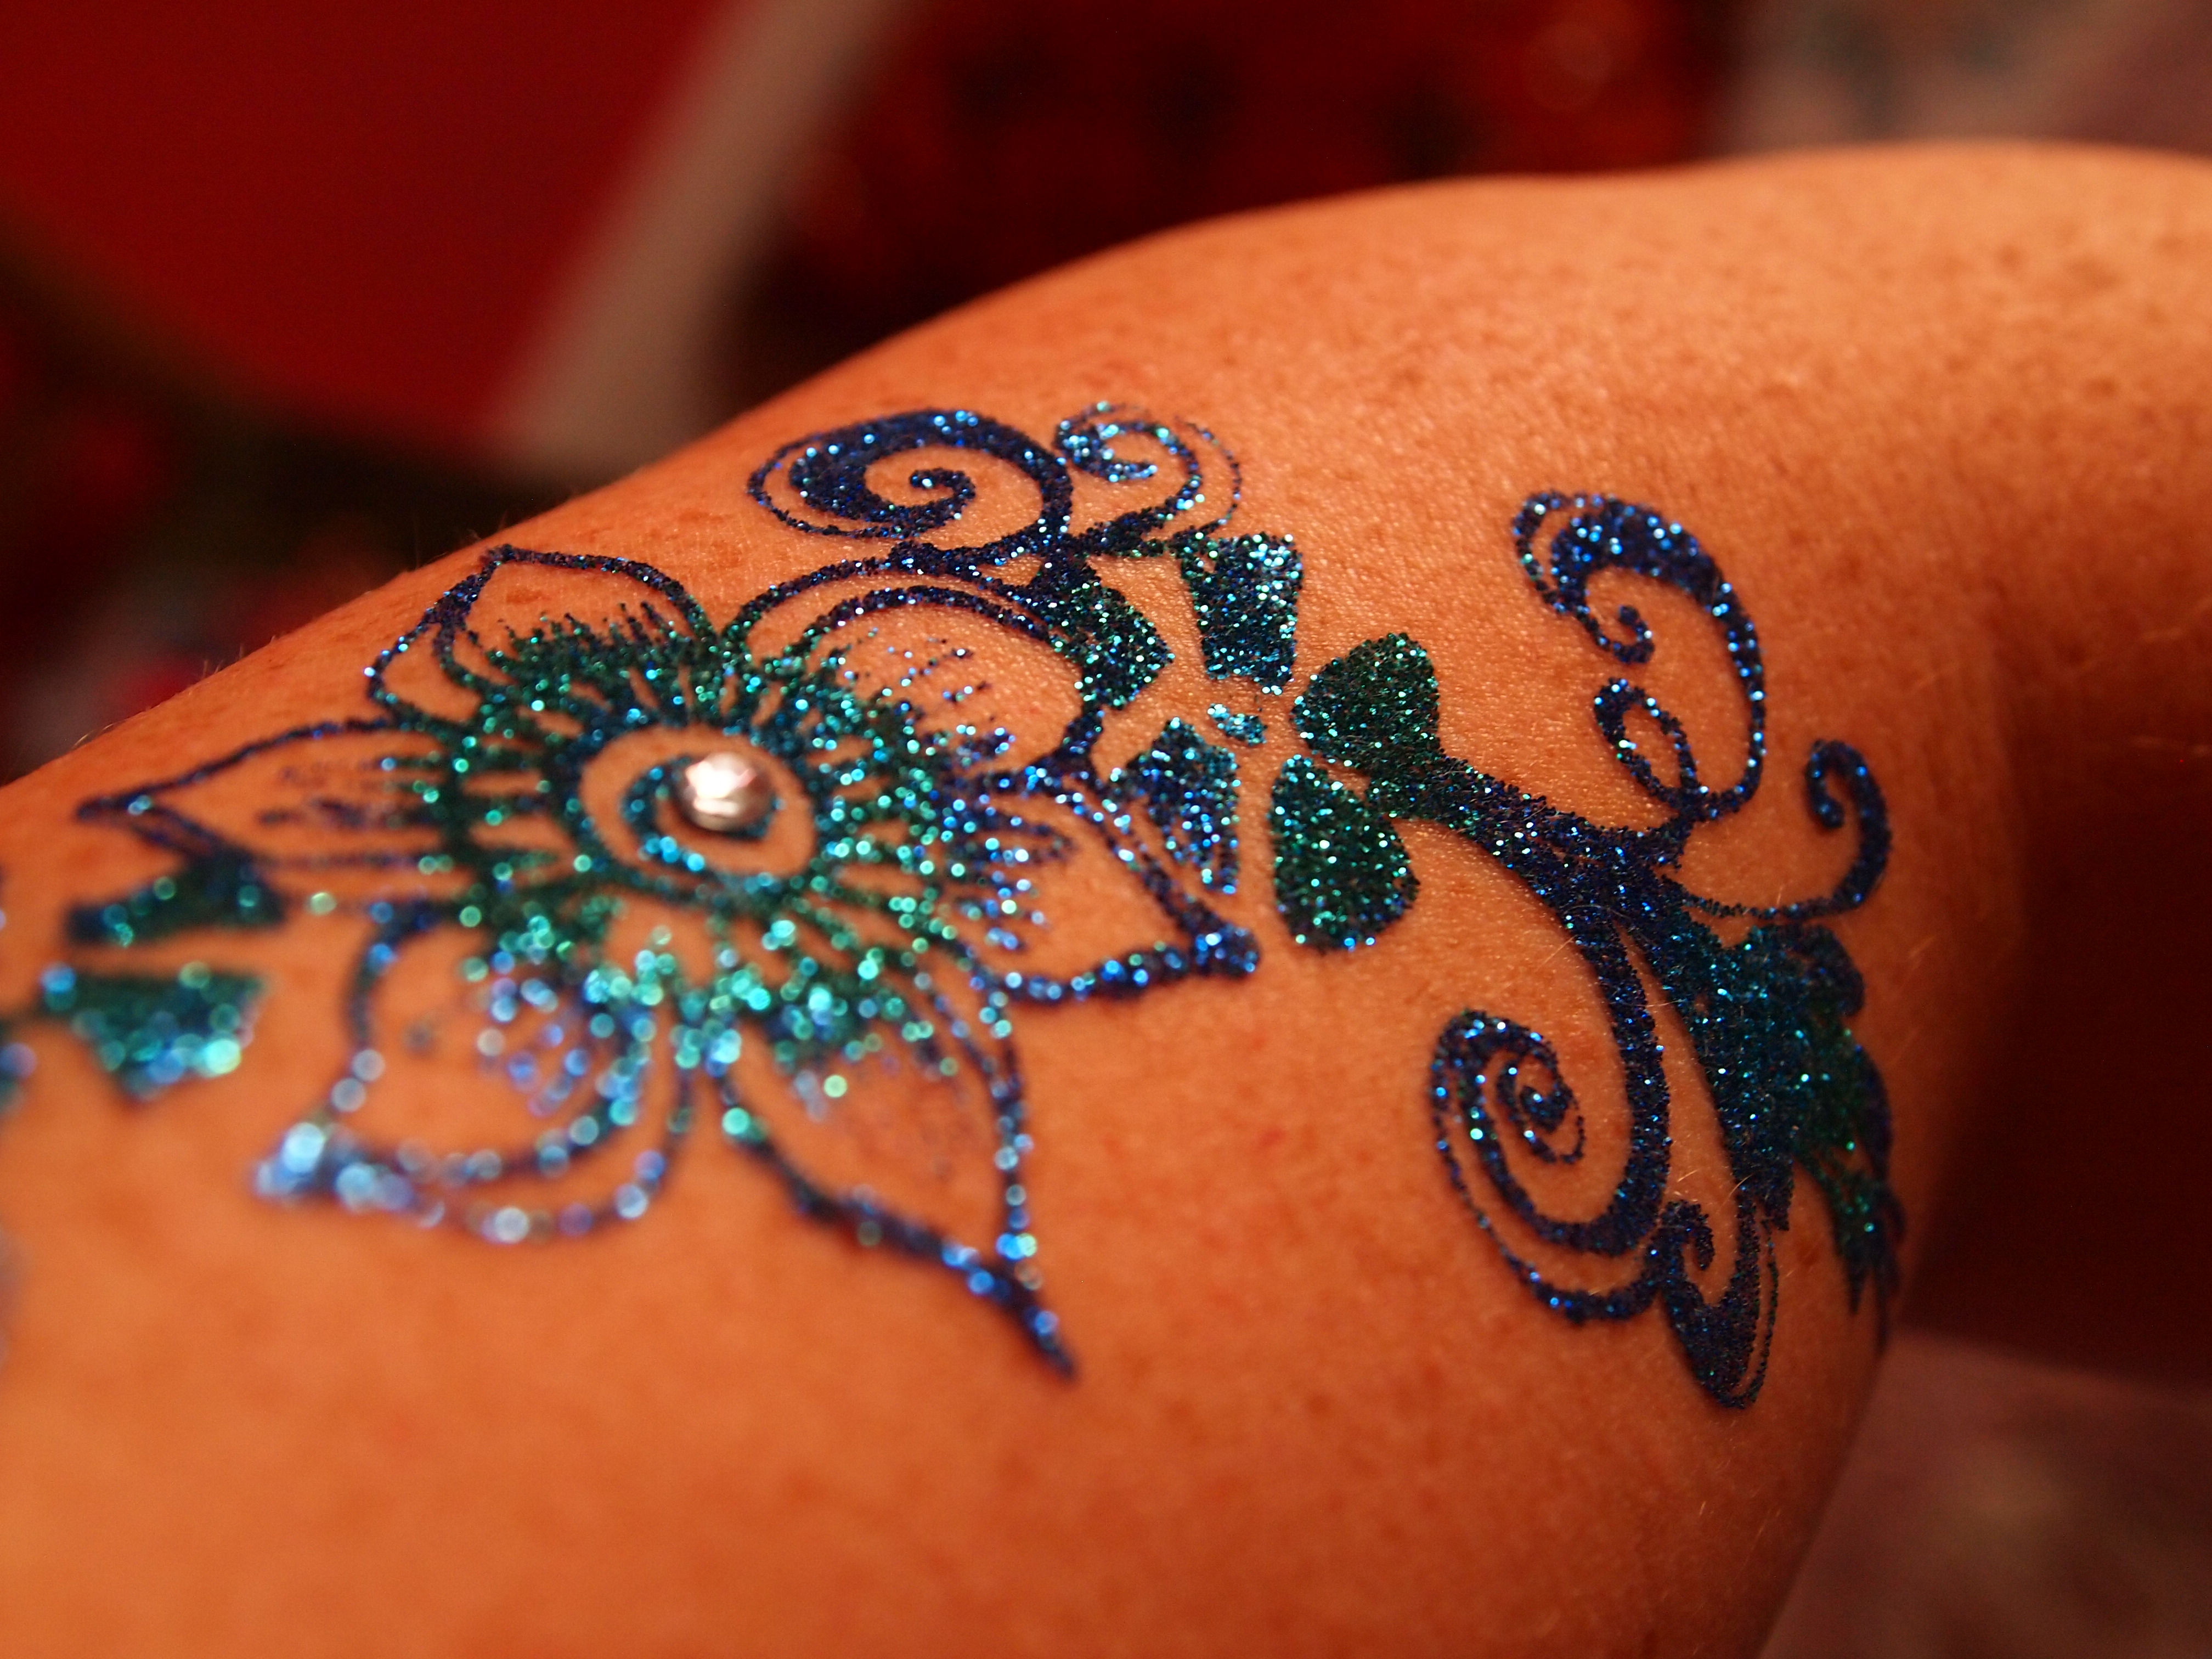 Glitter Flower Tattoo Design For Half Sleeve